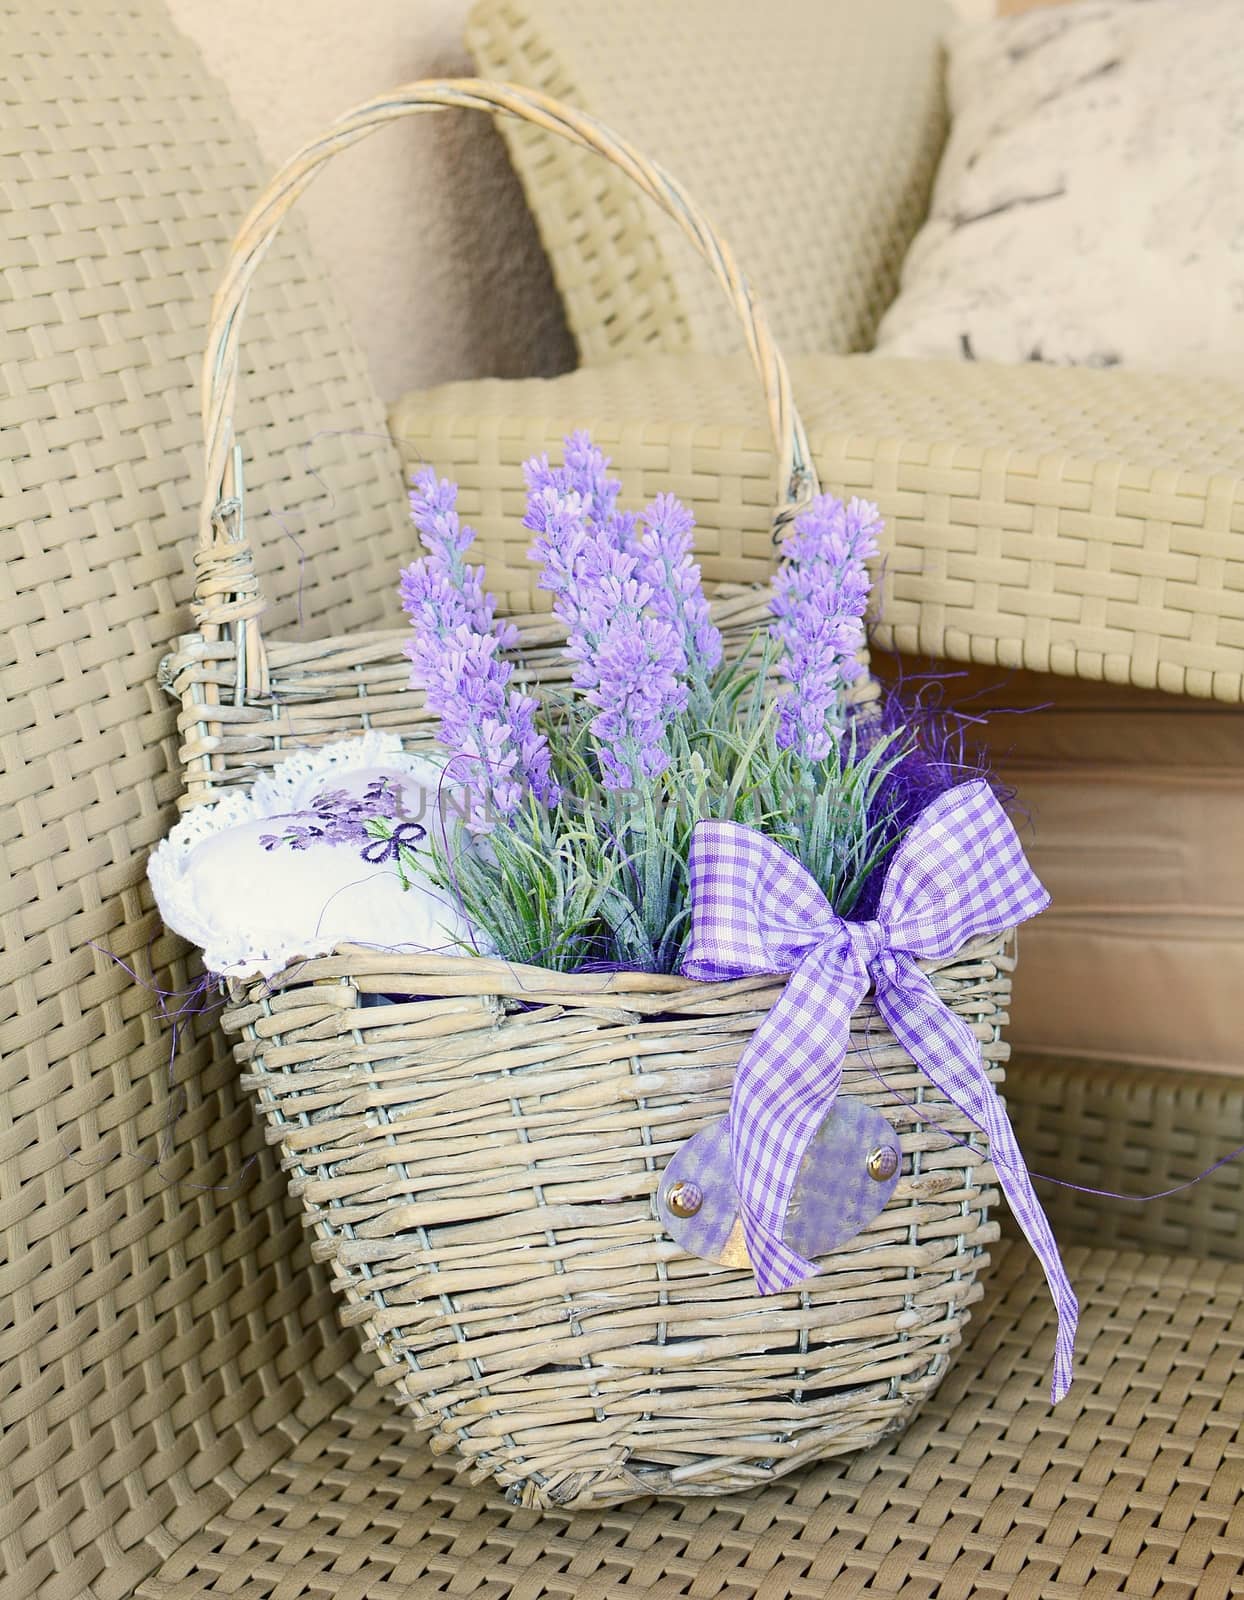 Lavender basket by hamik